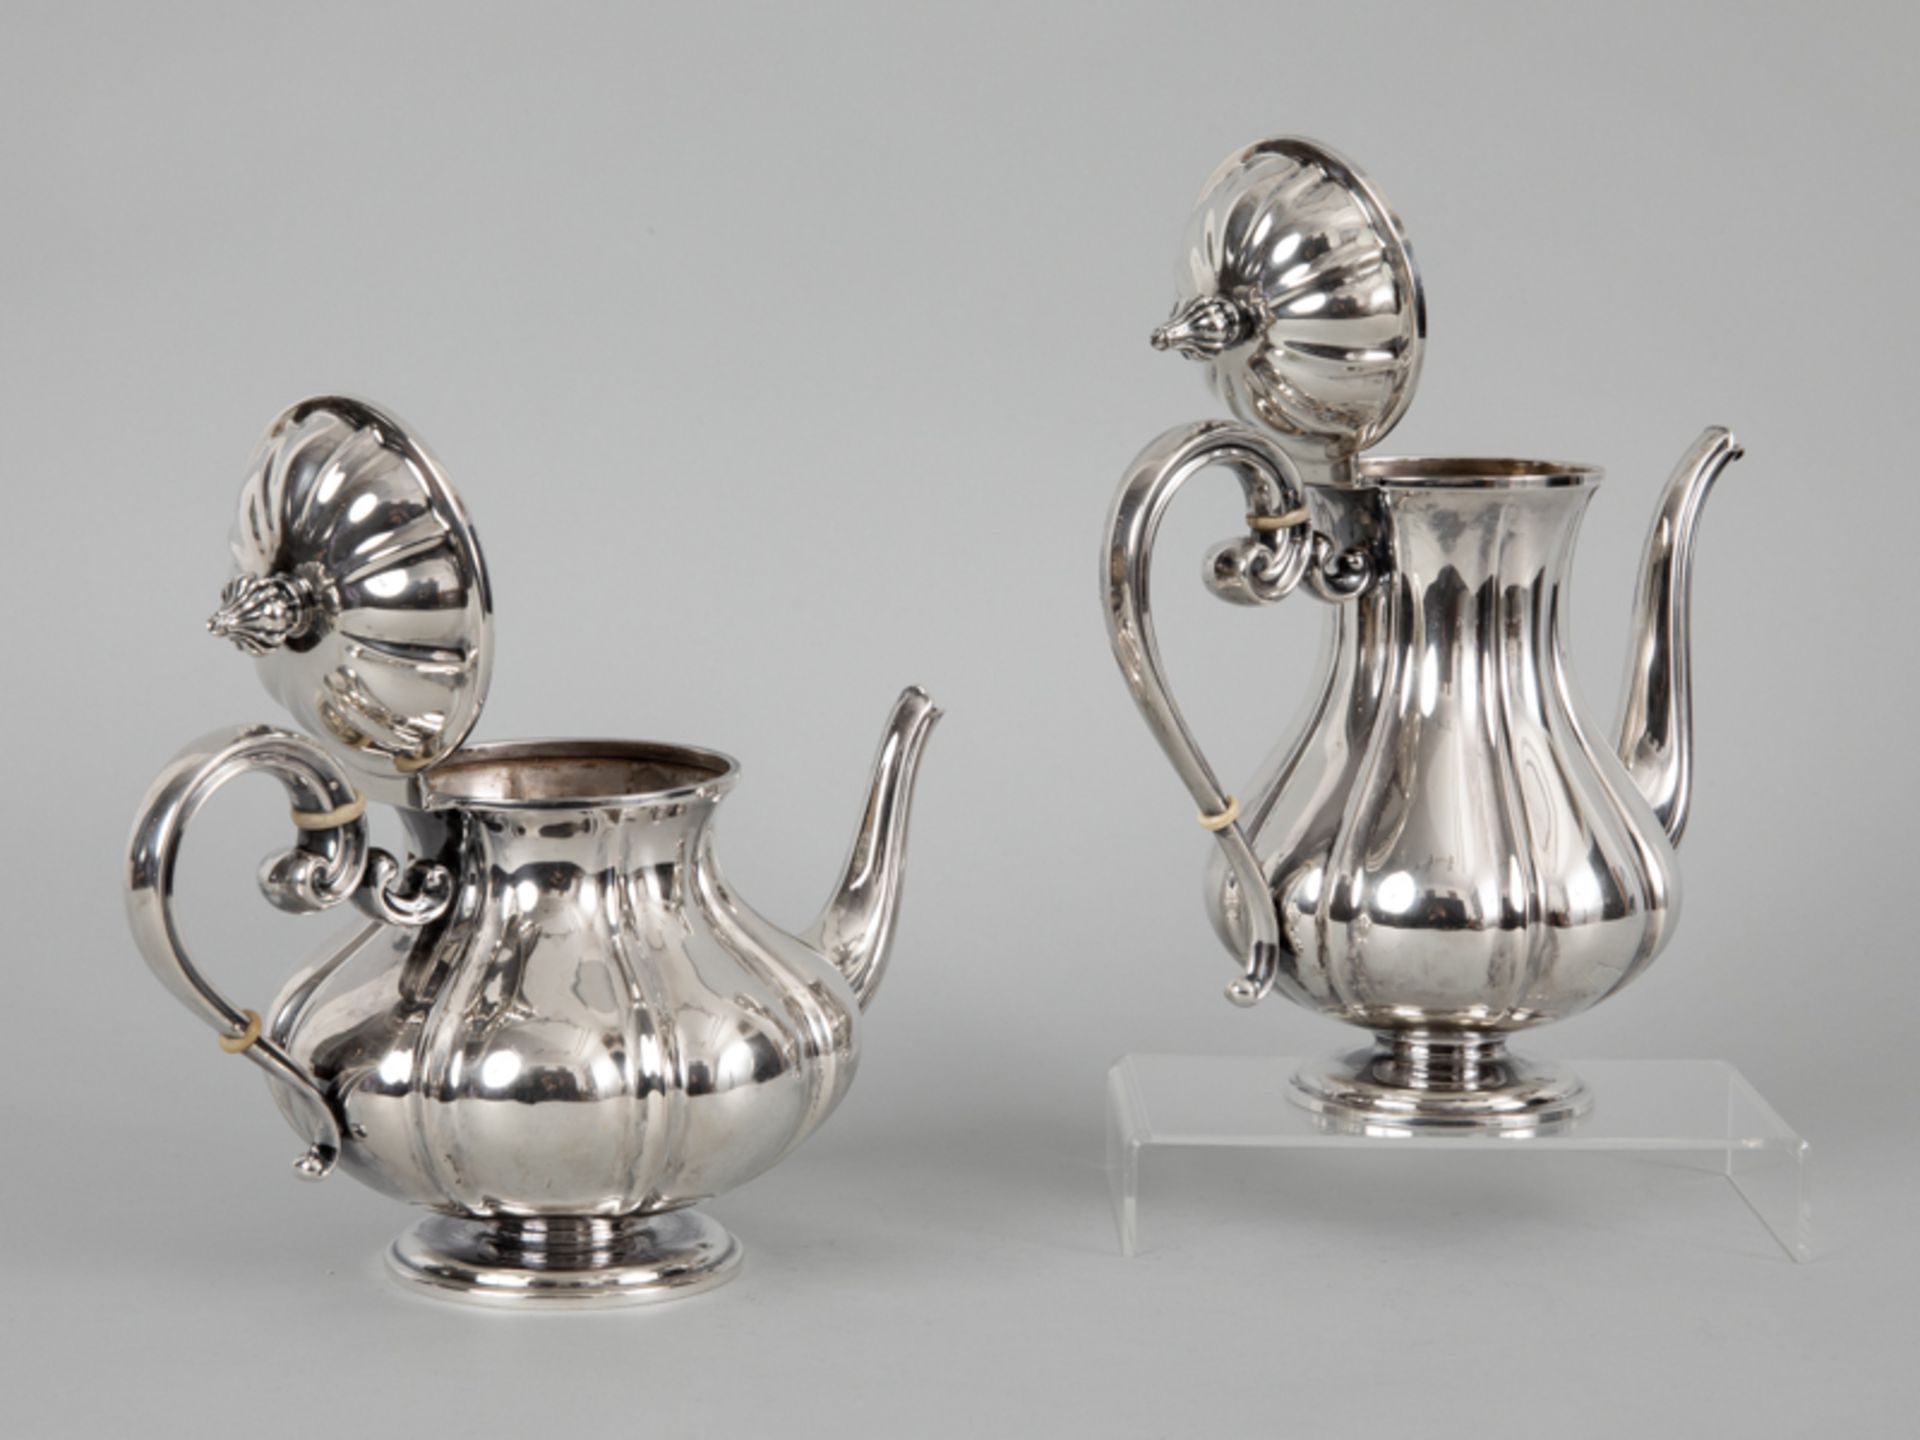 Teekanne und Kaffeekanne, Italien, 20.Jahrhundert 800/-er Silber; Gewicht ca. 817 g; - Bild 2 aus 3